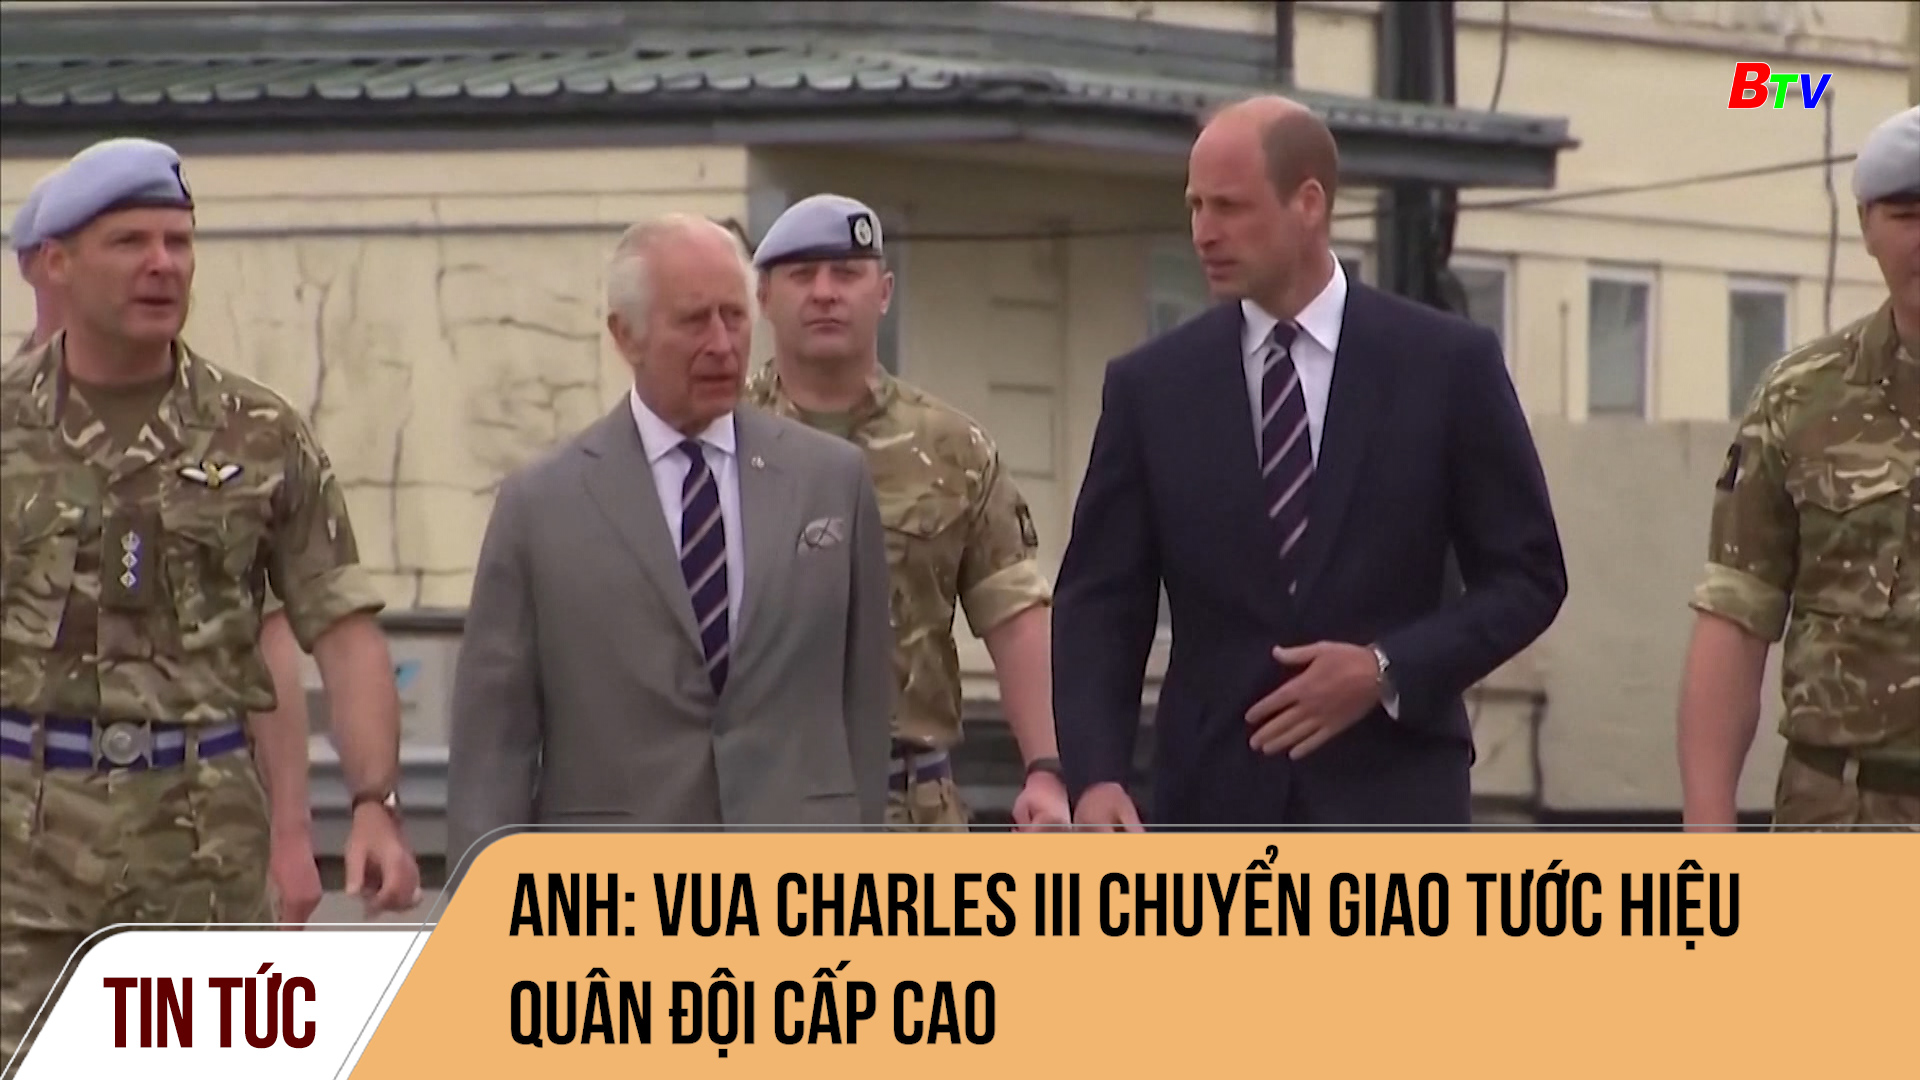  Anh: Vua Charles III chuyển giao tước hiệu quân đội cấp cao